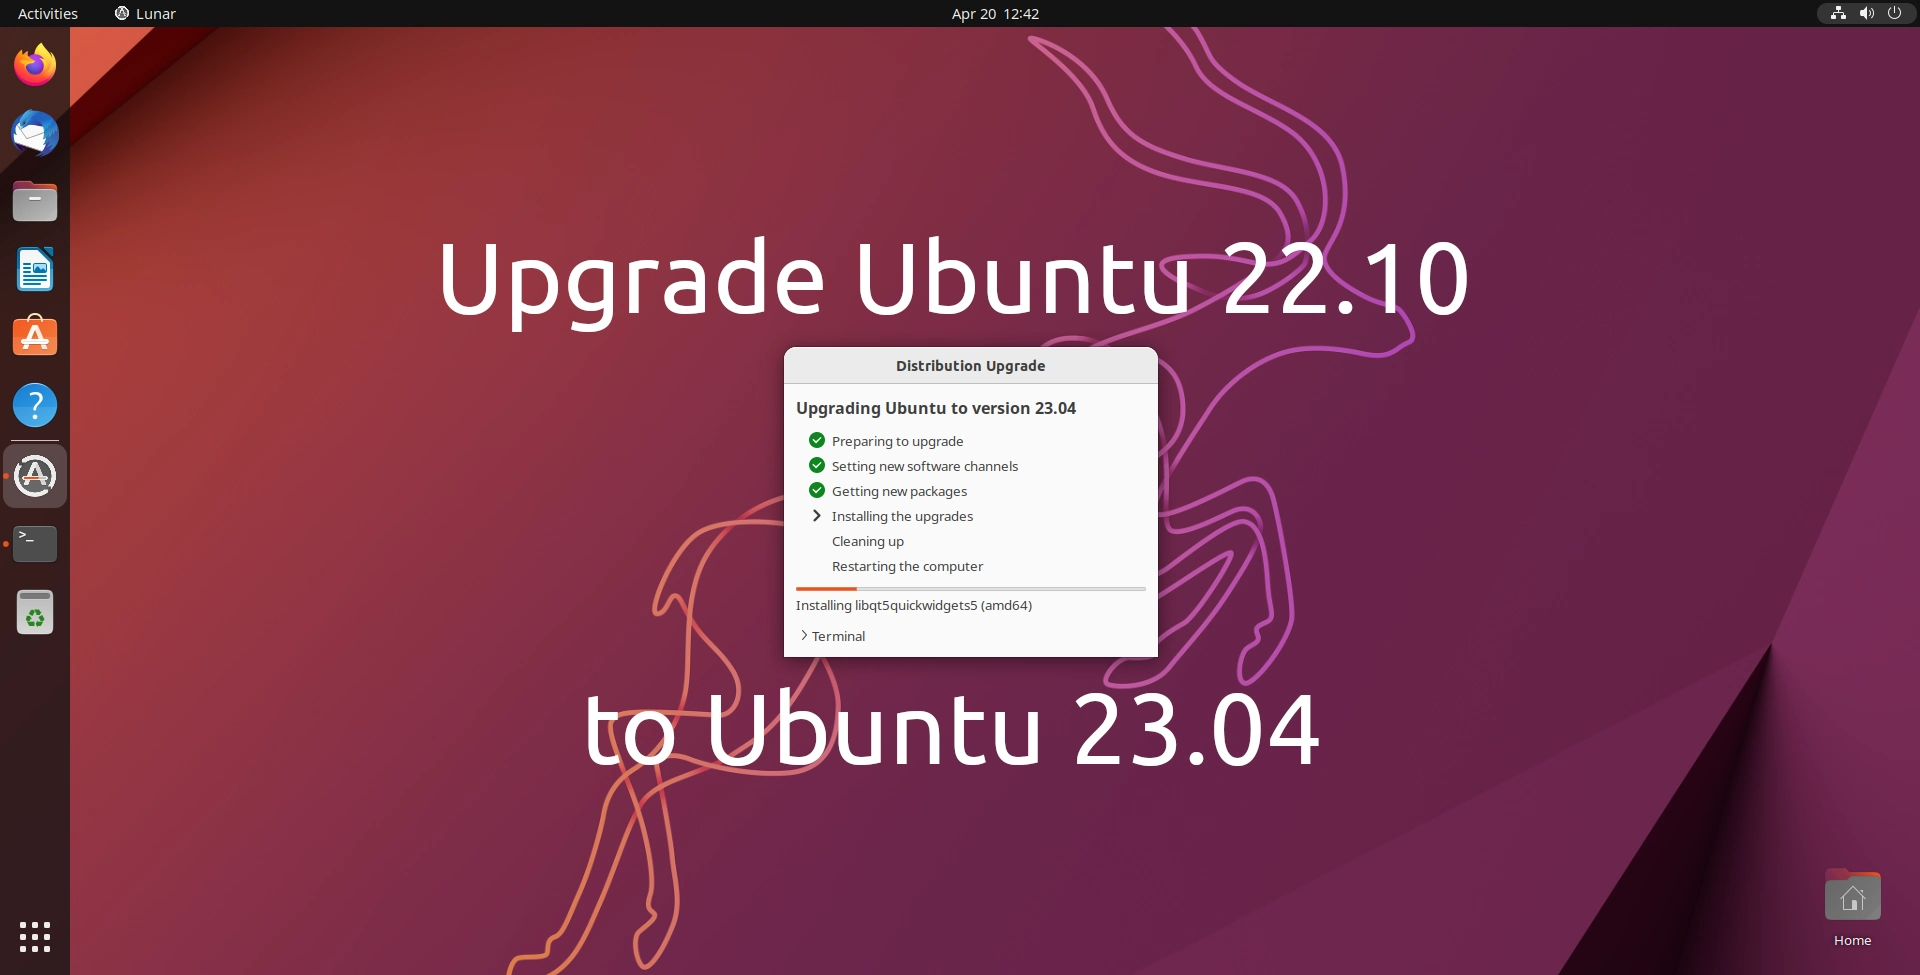 You Can Now Upgrade Ubuntu 22.10 to Ubuntu 23.04, Here’s How